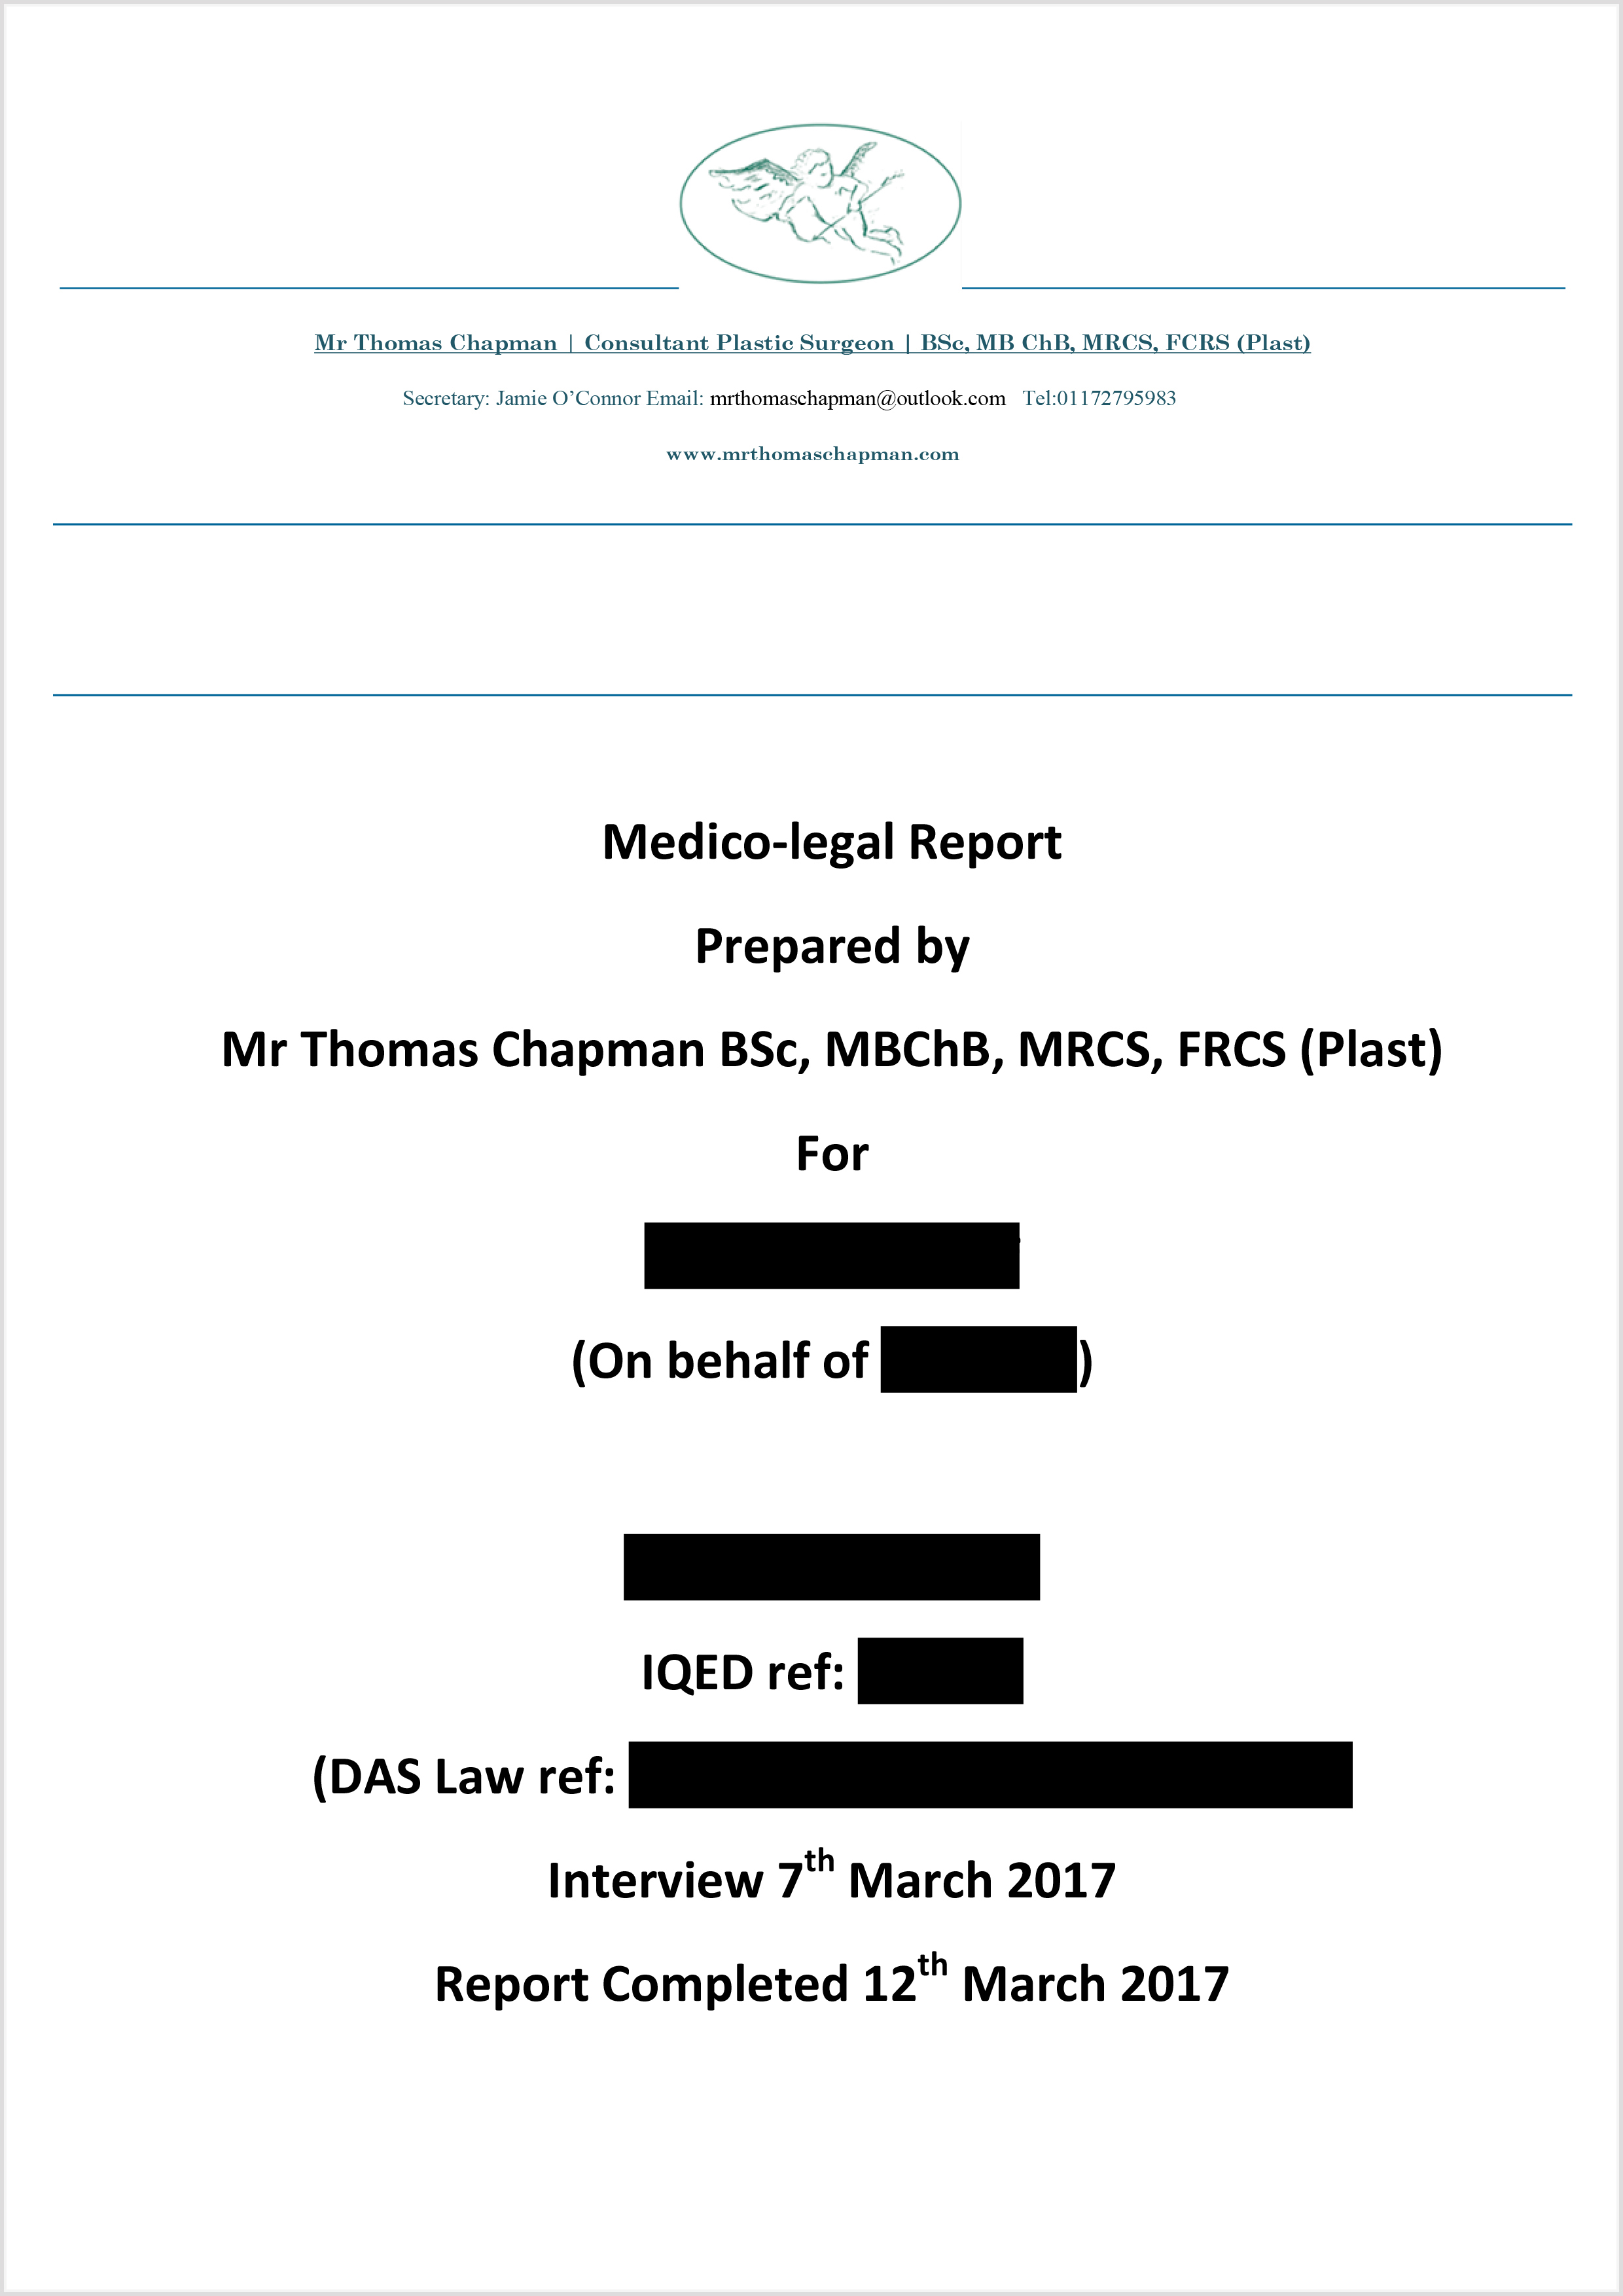 MedicoLegal Reporting - Mr Thomas Chapman Throughout Medical Legal Report Template